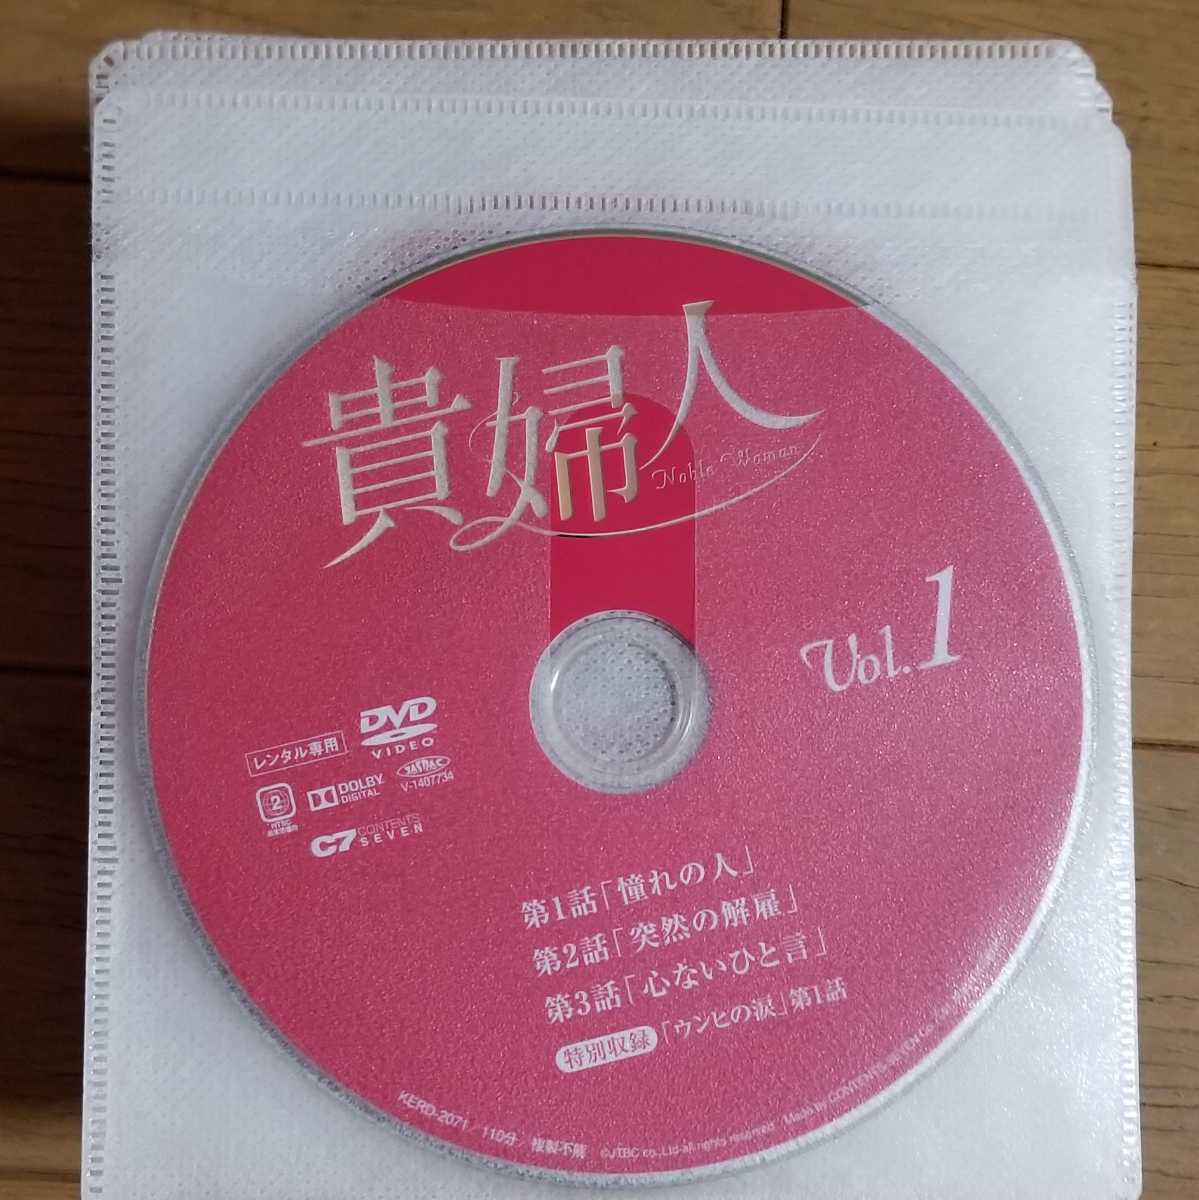 韓国ドラマ 貴婦人 全話 レンタル版dvd ディスクのみ 海外 売買されたオークション情報 Yahooの商品情報をアーカイブ公開 オークファン Aucfan Com